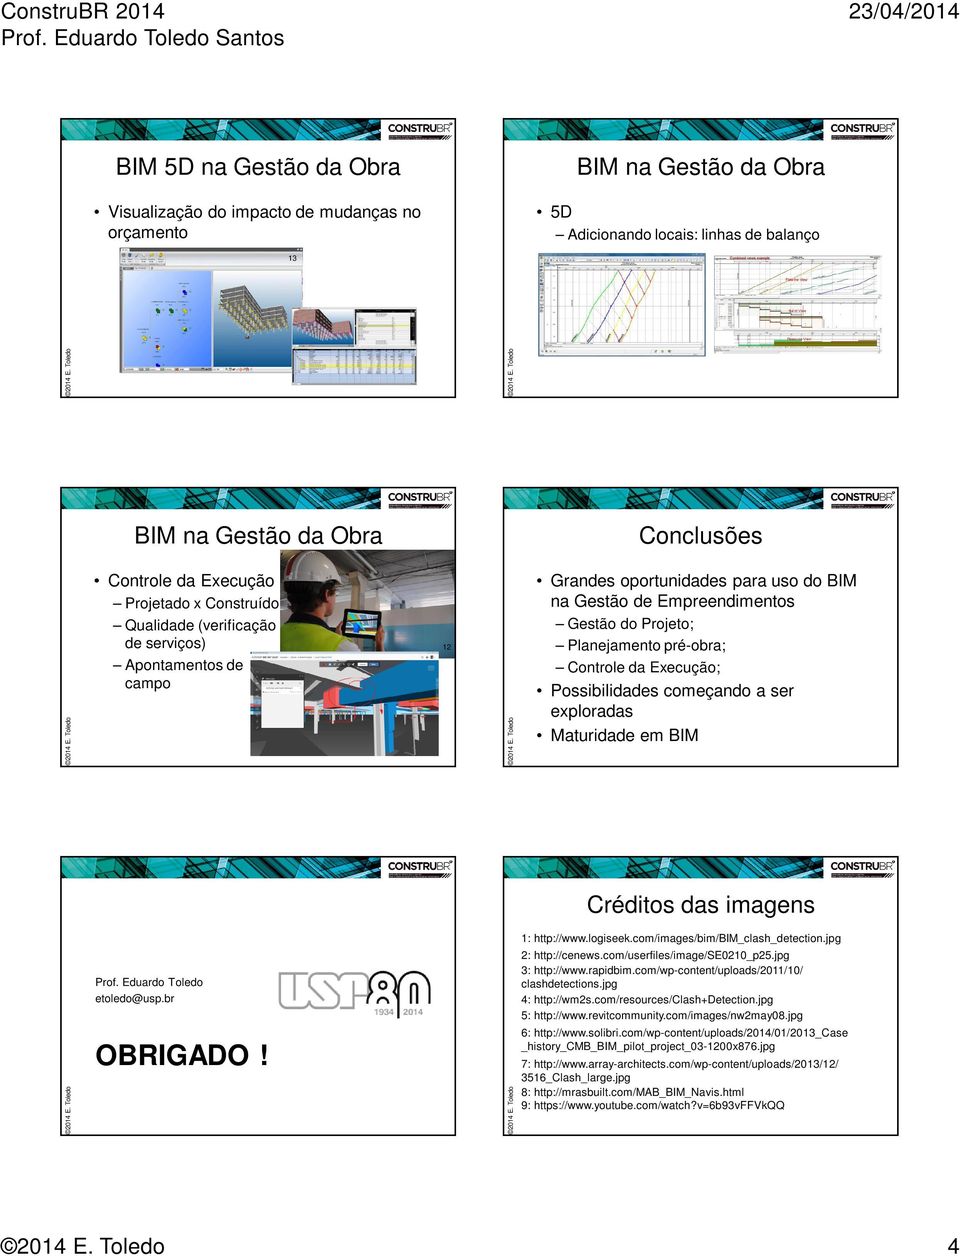 Maturidade em BIM Créditos das imagens Prof. Eduardo Toledo etoledo@usp.br OBRIGADO! 1: http://www.logiseek.com/images/bim/bim_clash_detection.jpg 2: http://cenews.com/userfiles/image/se0210_p25.